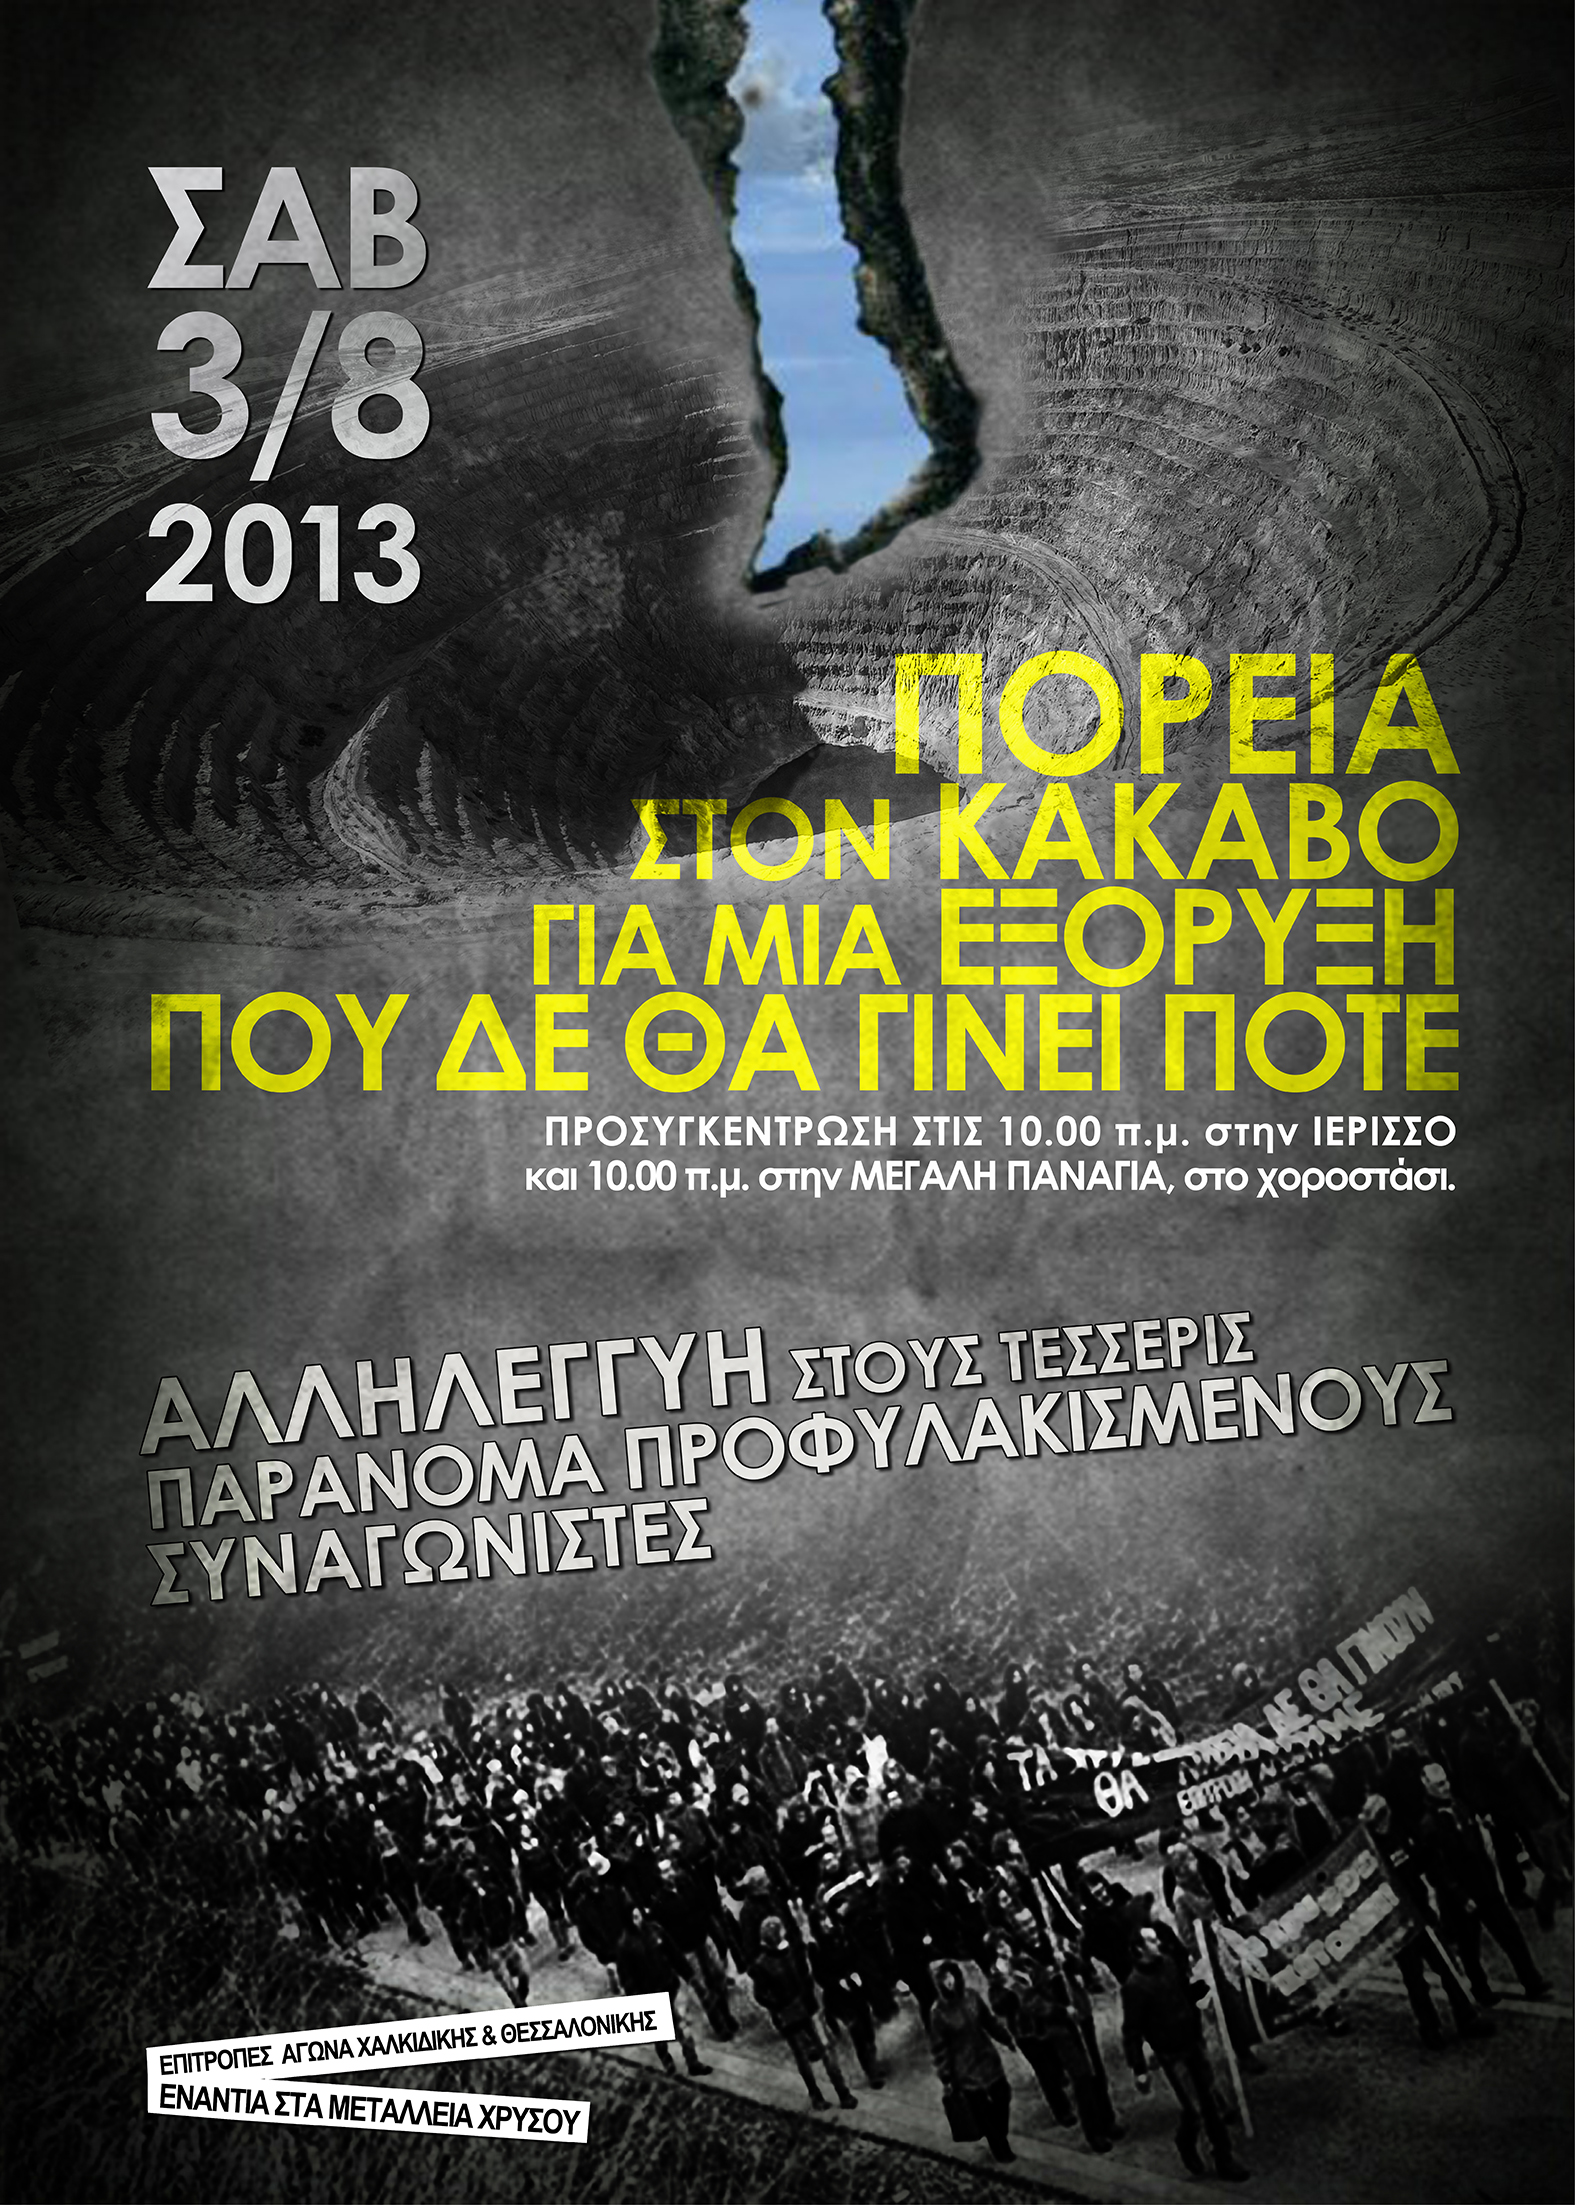 Χαλκιδική:Πορεία το Σάββατο στον Κάκαβο ενάντια στην εξόρυξη χρυσού